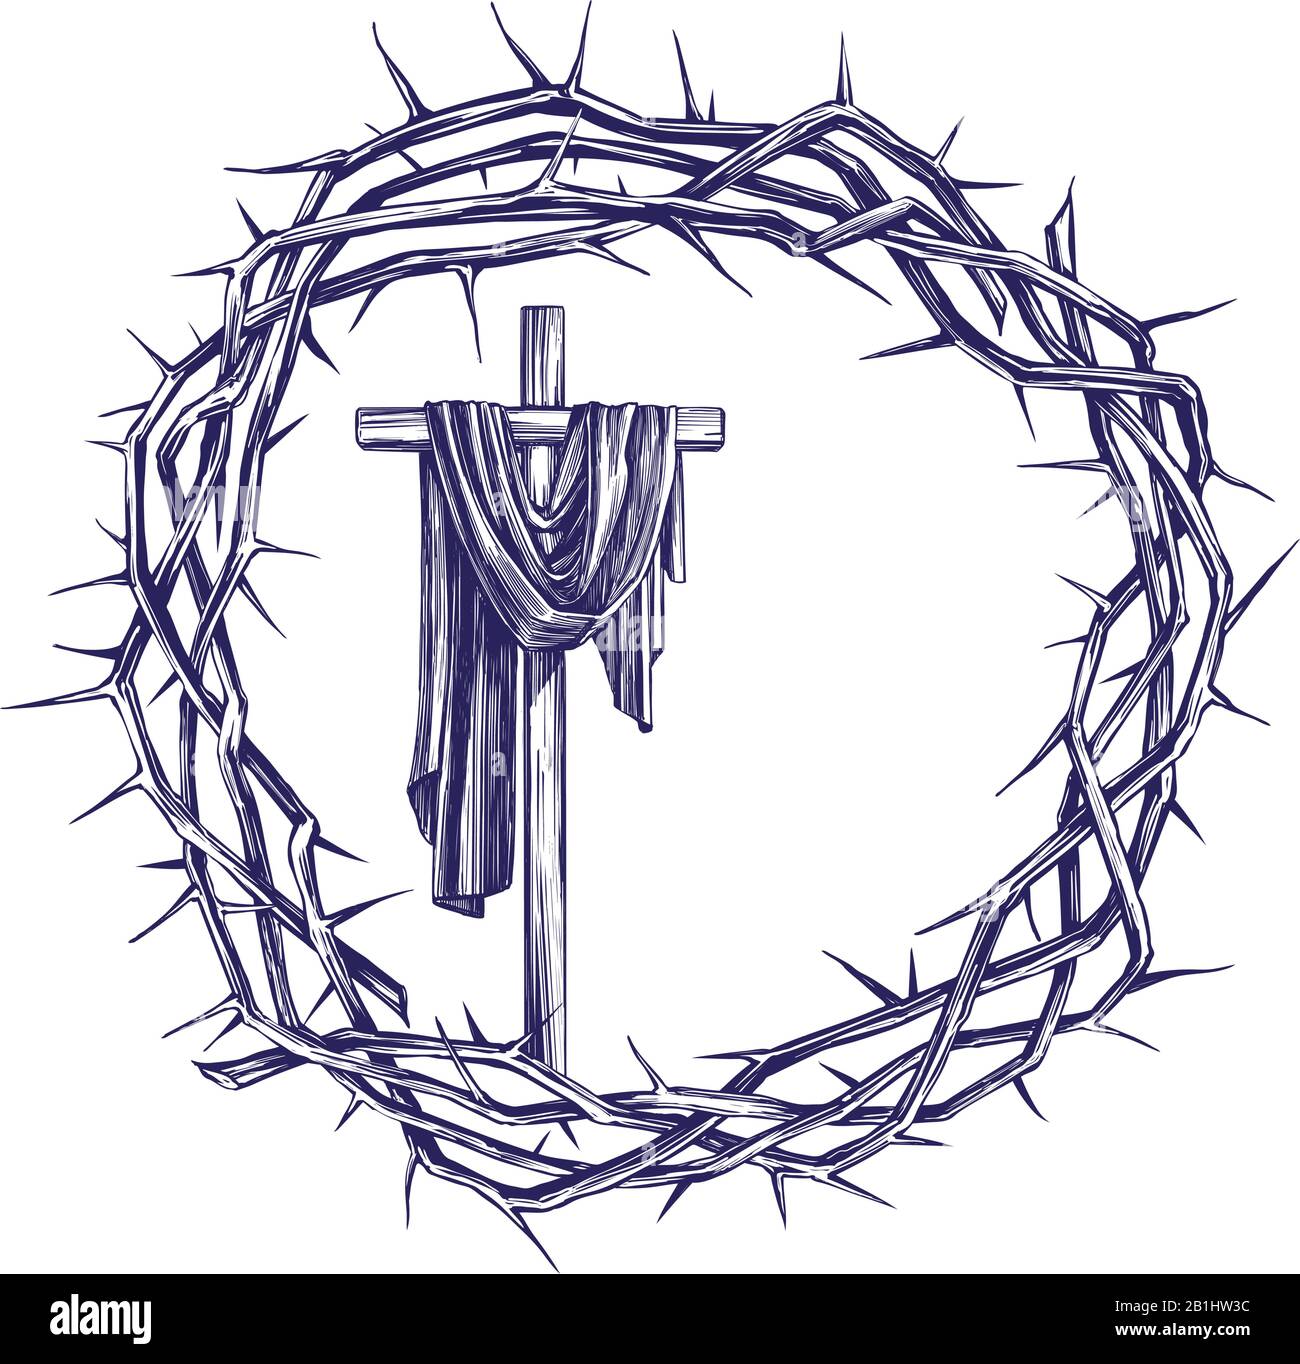 Croce e corona di spine, simbolo religioso di pasqua del cristianesimo disegno vettoriale disegnato a mano disegno. Illustrazione Vettoriale